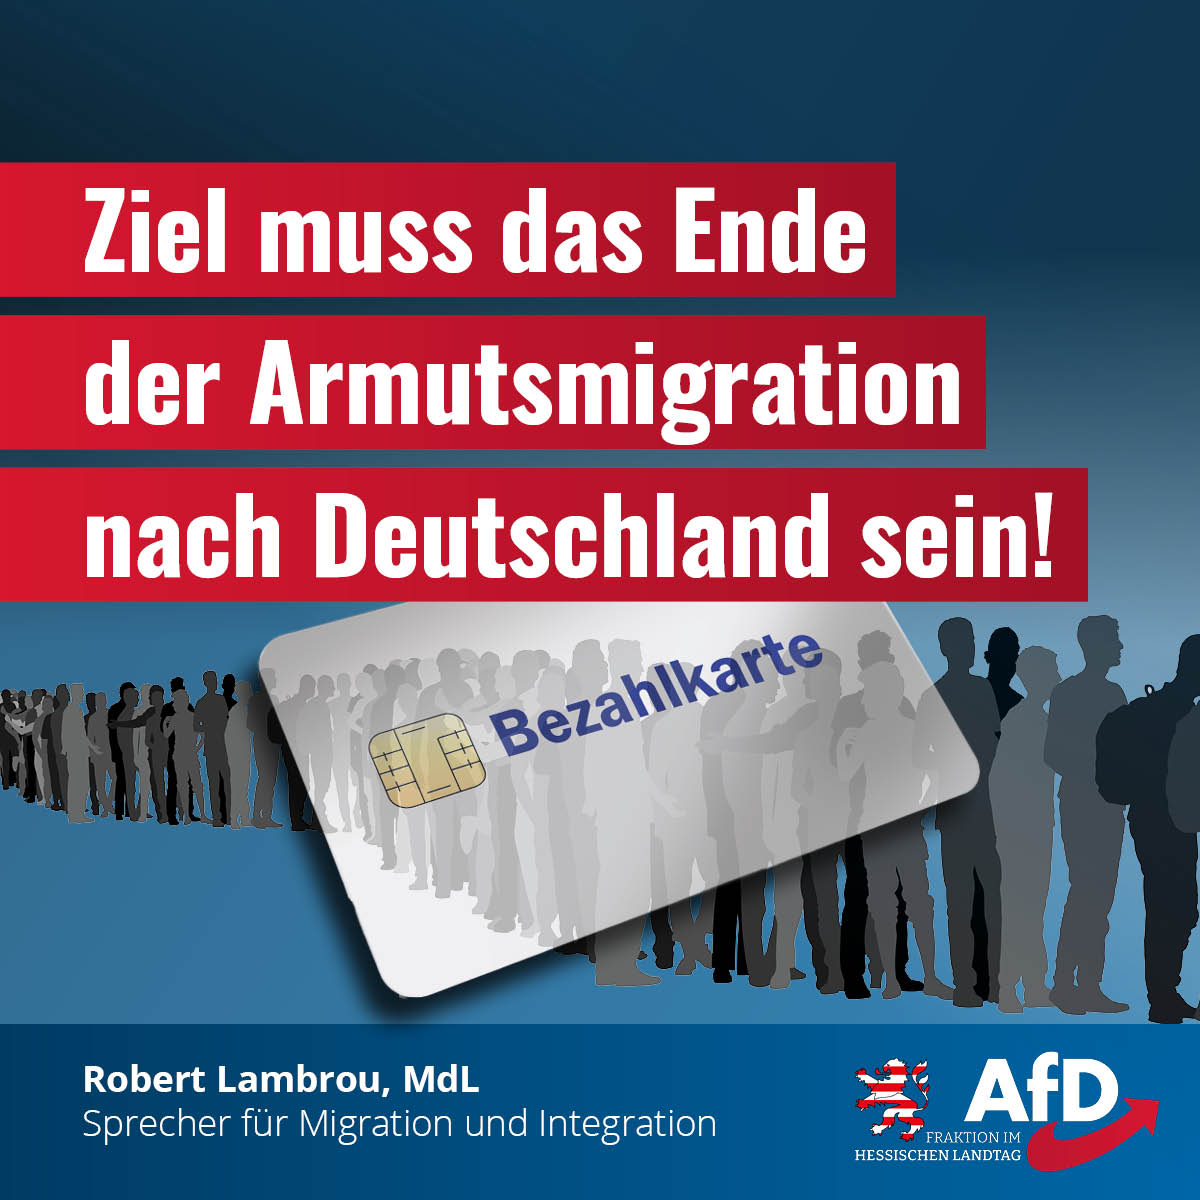 You are currently viewing Bezahlkarte: Das Ziel muss das Ende der Armutsmigration nach Deutschland sein